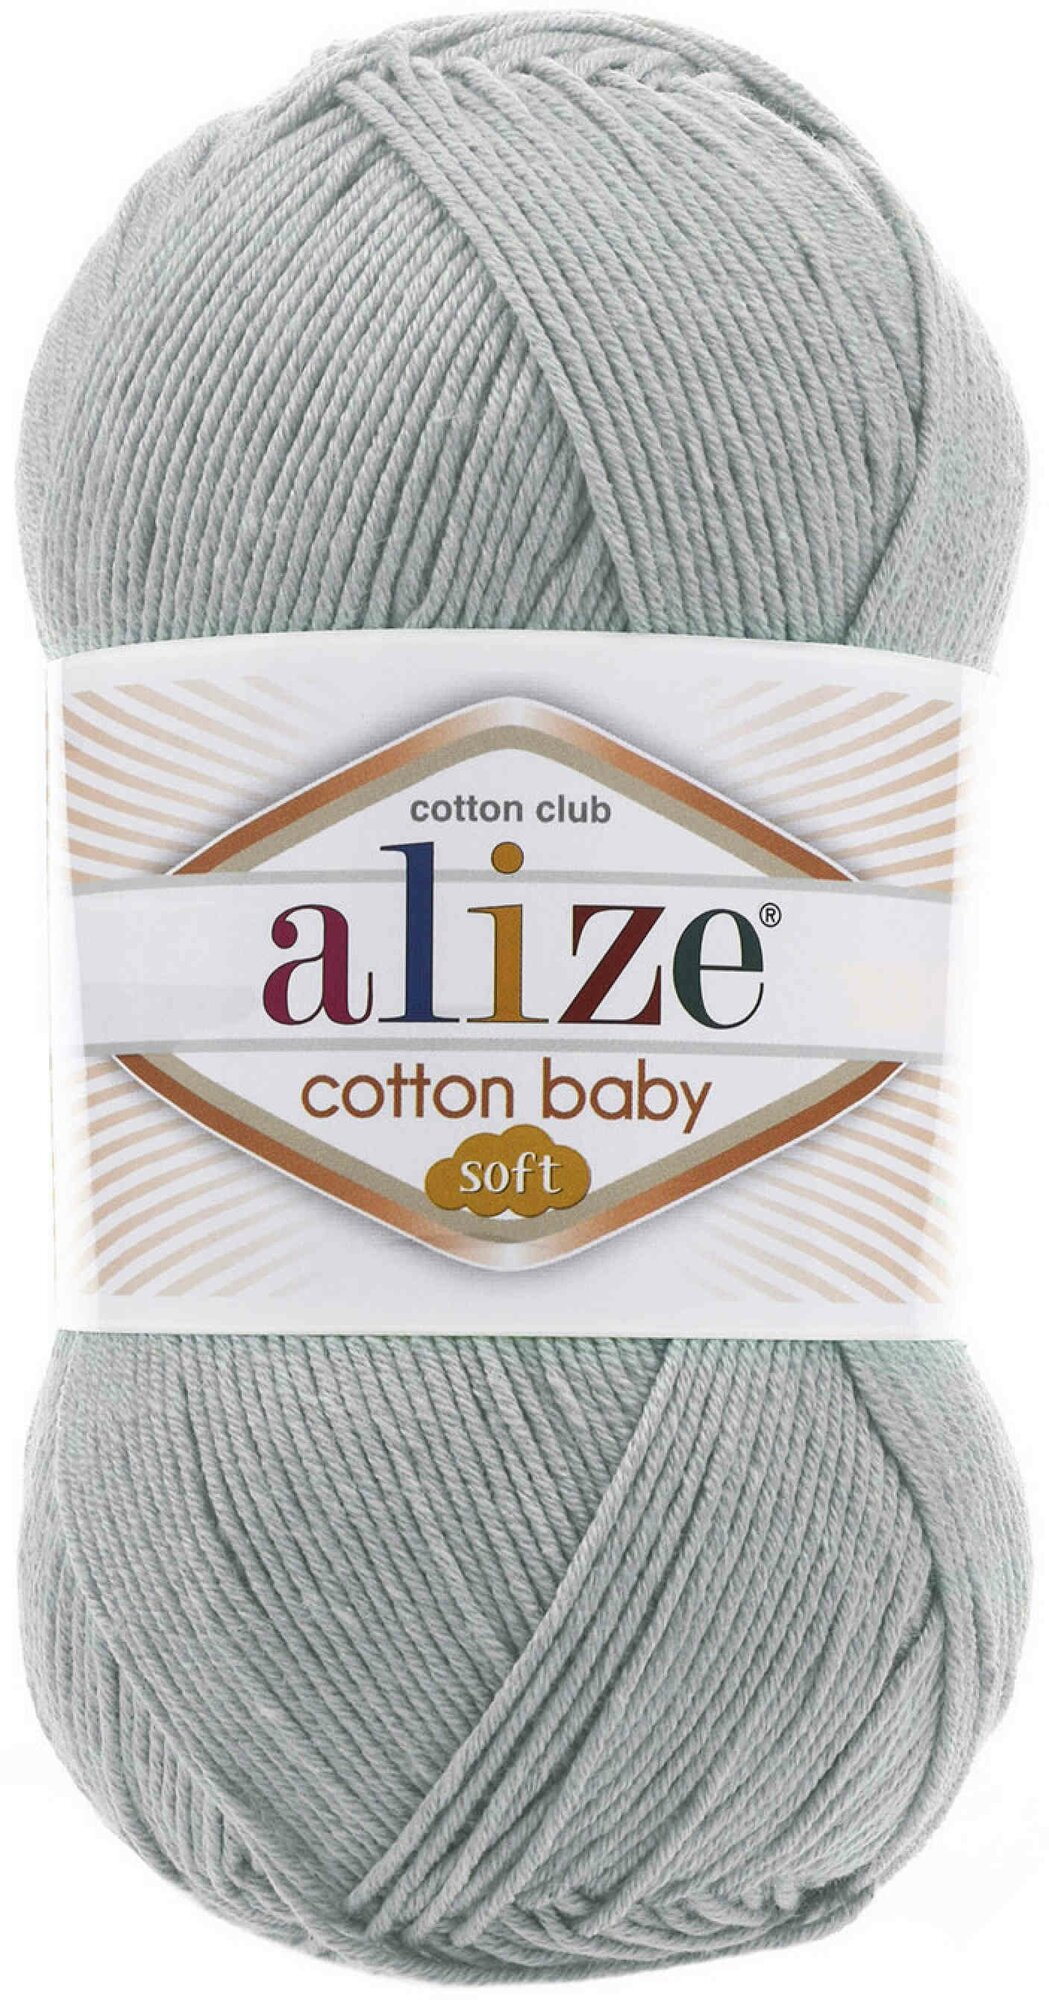 Пряжа Alize Cotton baby soft серый (344), 50%хлопок/50%акрил, 270м, 100г, 1шт